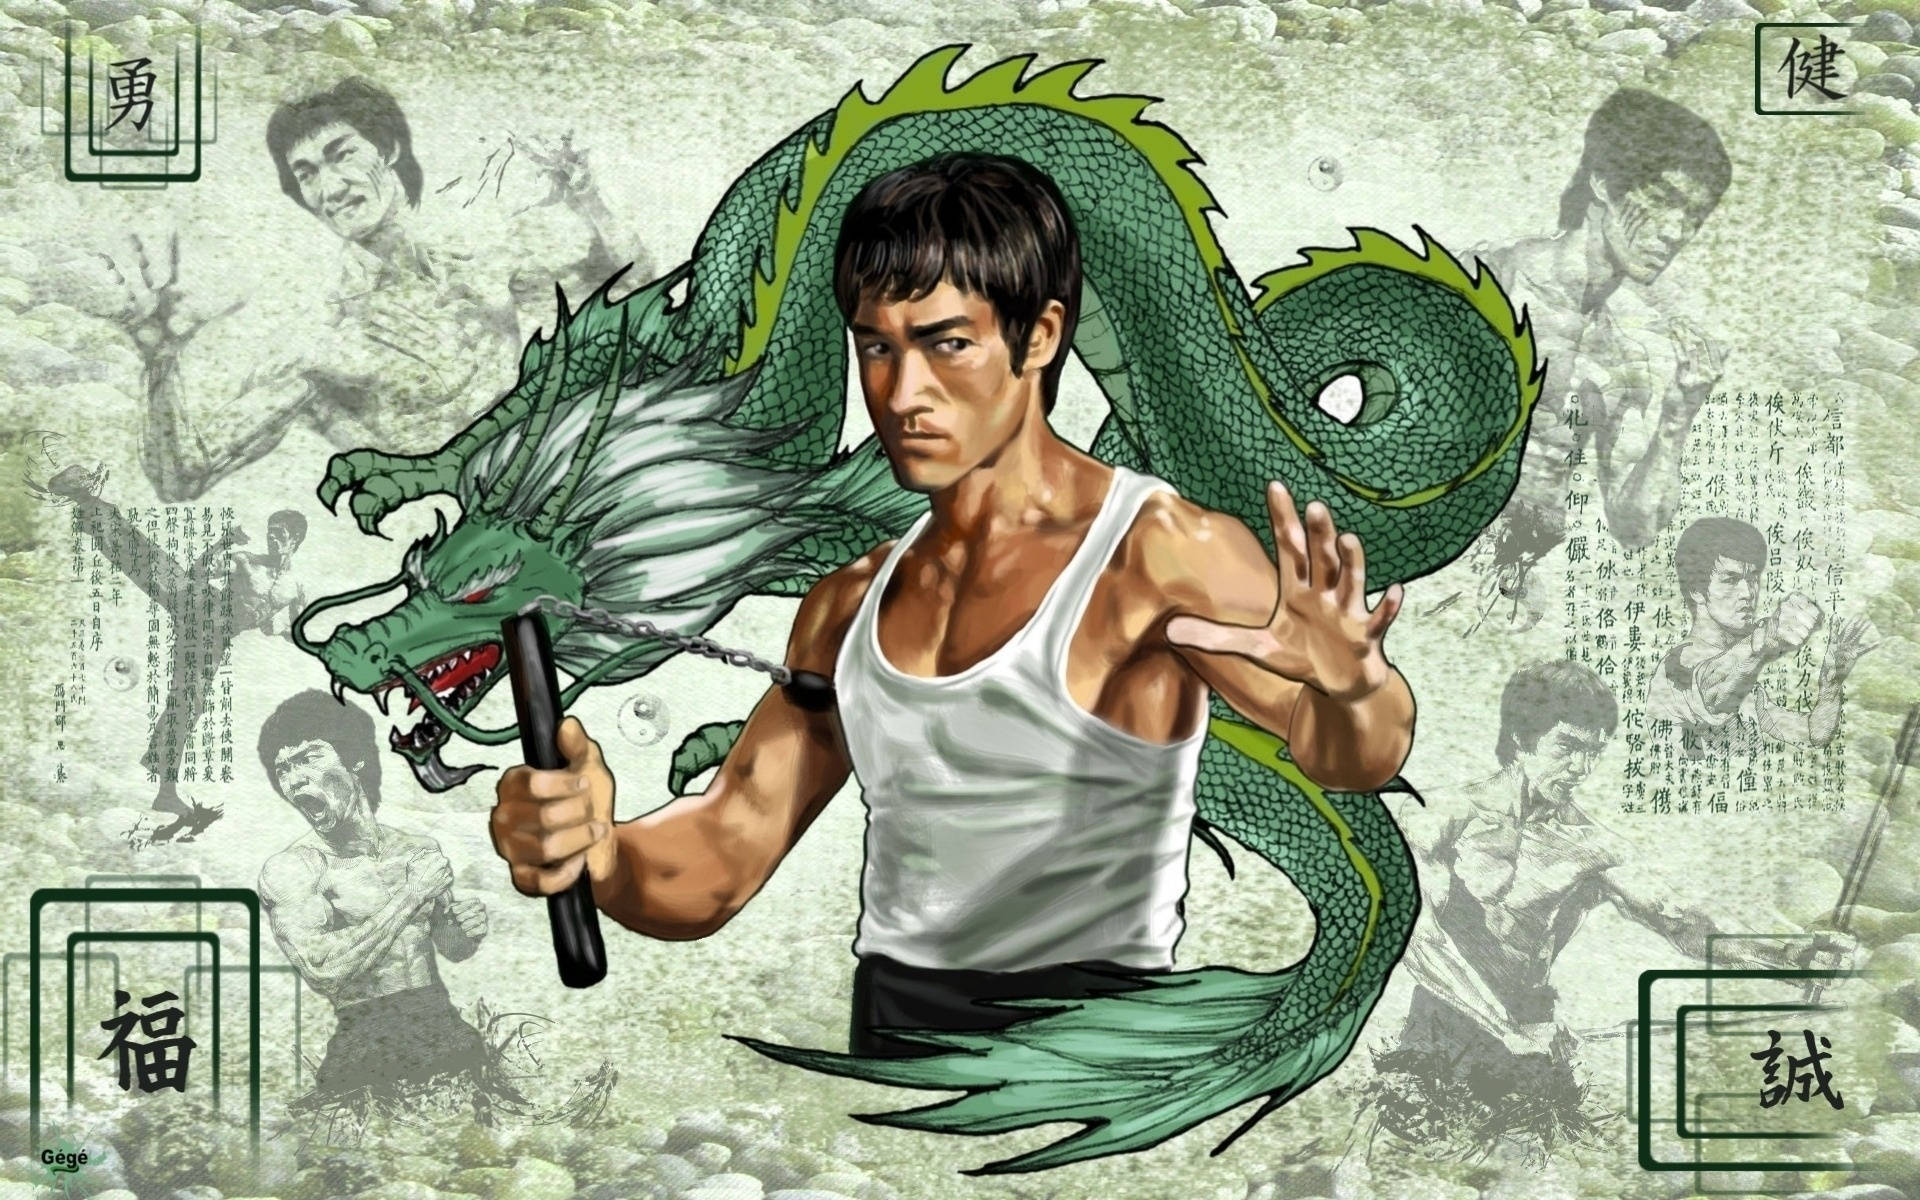 Tai Chi Bruce Lee Wallpaper